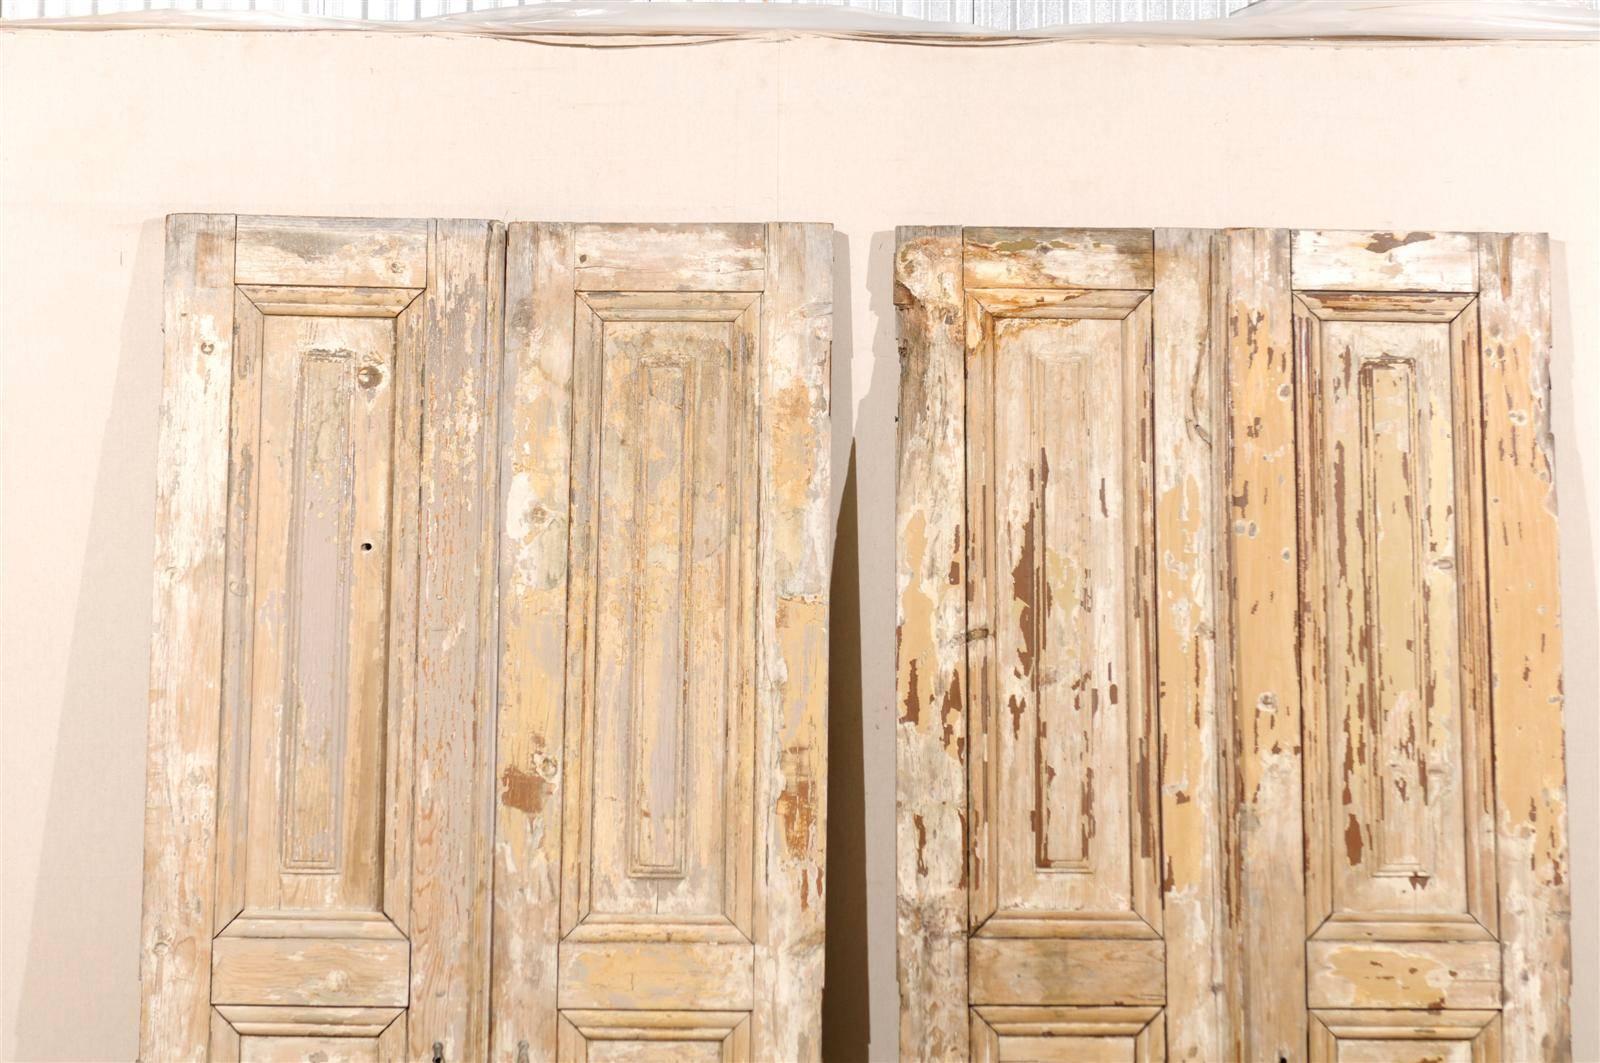 Zwei Paare französischer Türen aus dem 19. Jahrhundert mit erhabenen Füllungen und einem quadratischen geschnitzten Motiv in der Mitte. Diese Türen wurden bis auf ihre ursprüngliche Oberfläche abgeschliffen. 

Hier sind die Abmessungen für die